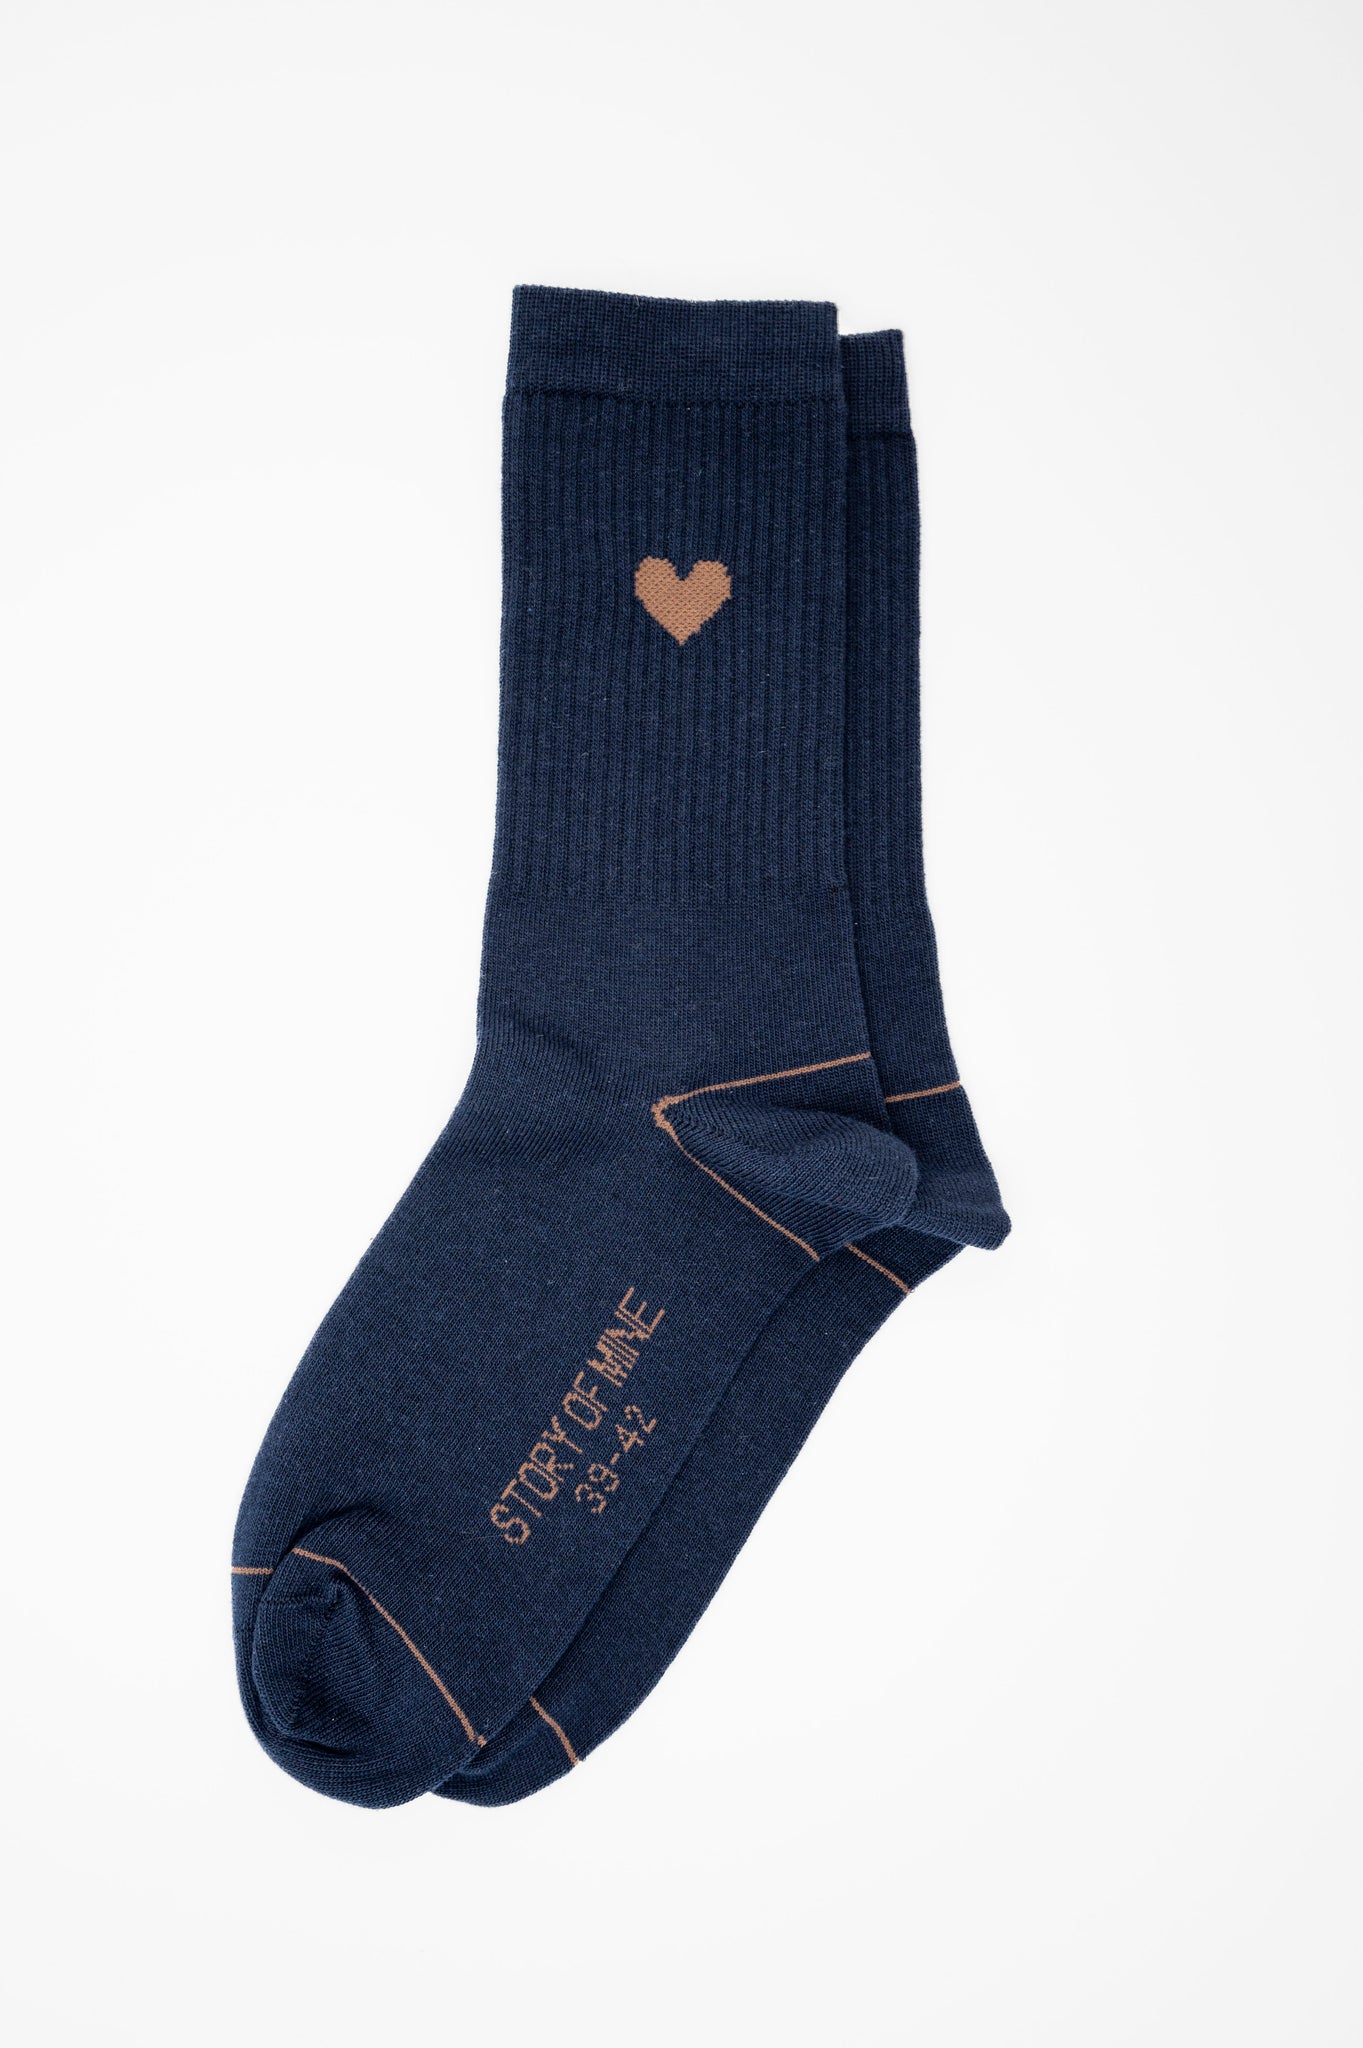 Socks with heart navy / cream